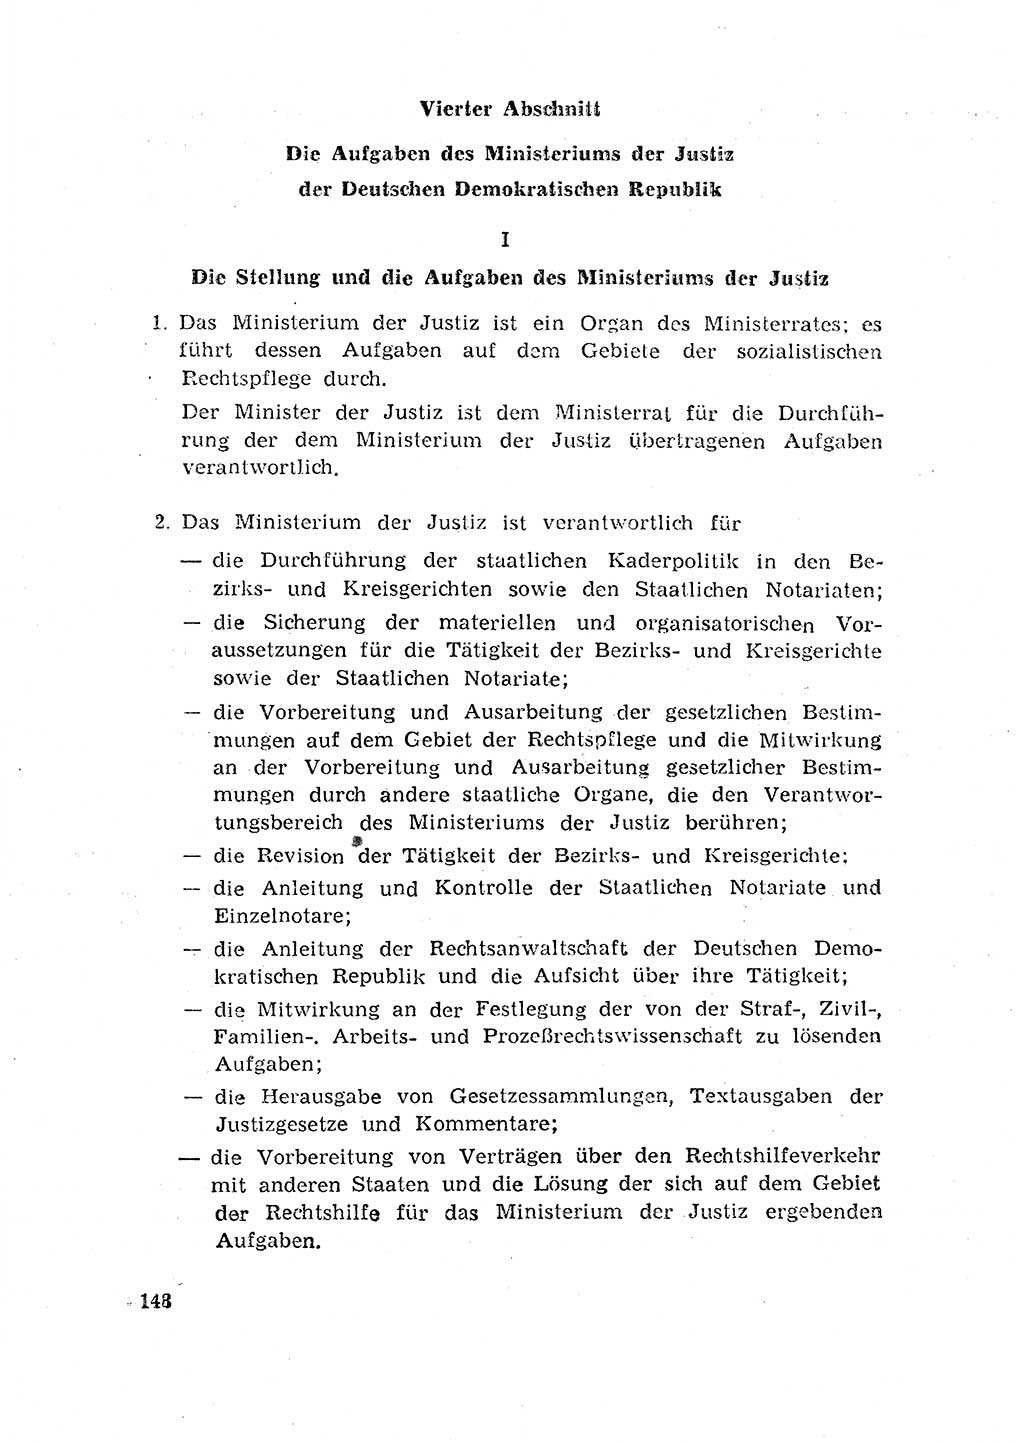 Rechtspflegeerlaß [Deutsche Demokratische Republik (DDR)] 1963, Seite 148 (R.-Pfl.-Erl. DDR 1963, S. 148)